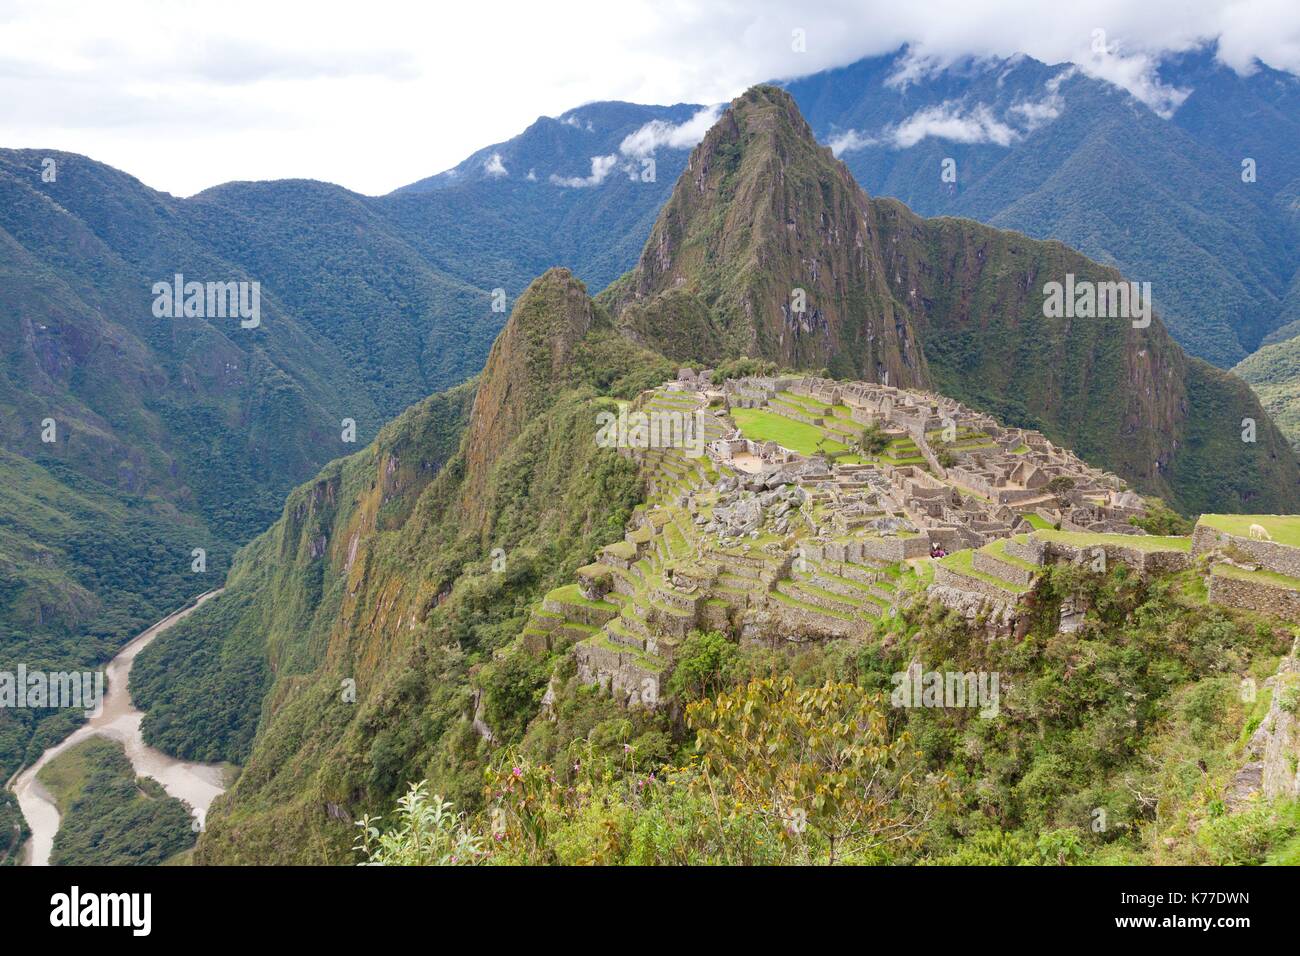 Perou, Provincia de Cusco, el valle sagrado de los incas, clasificado Patrimonio Mundial de la UNESCO, construida bajo el reinado del Inca Pachacútec en el siglo XV, el sitio fue descubierto por el explorador Hiram Bingham en 1911 Foto de stock